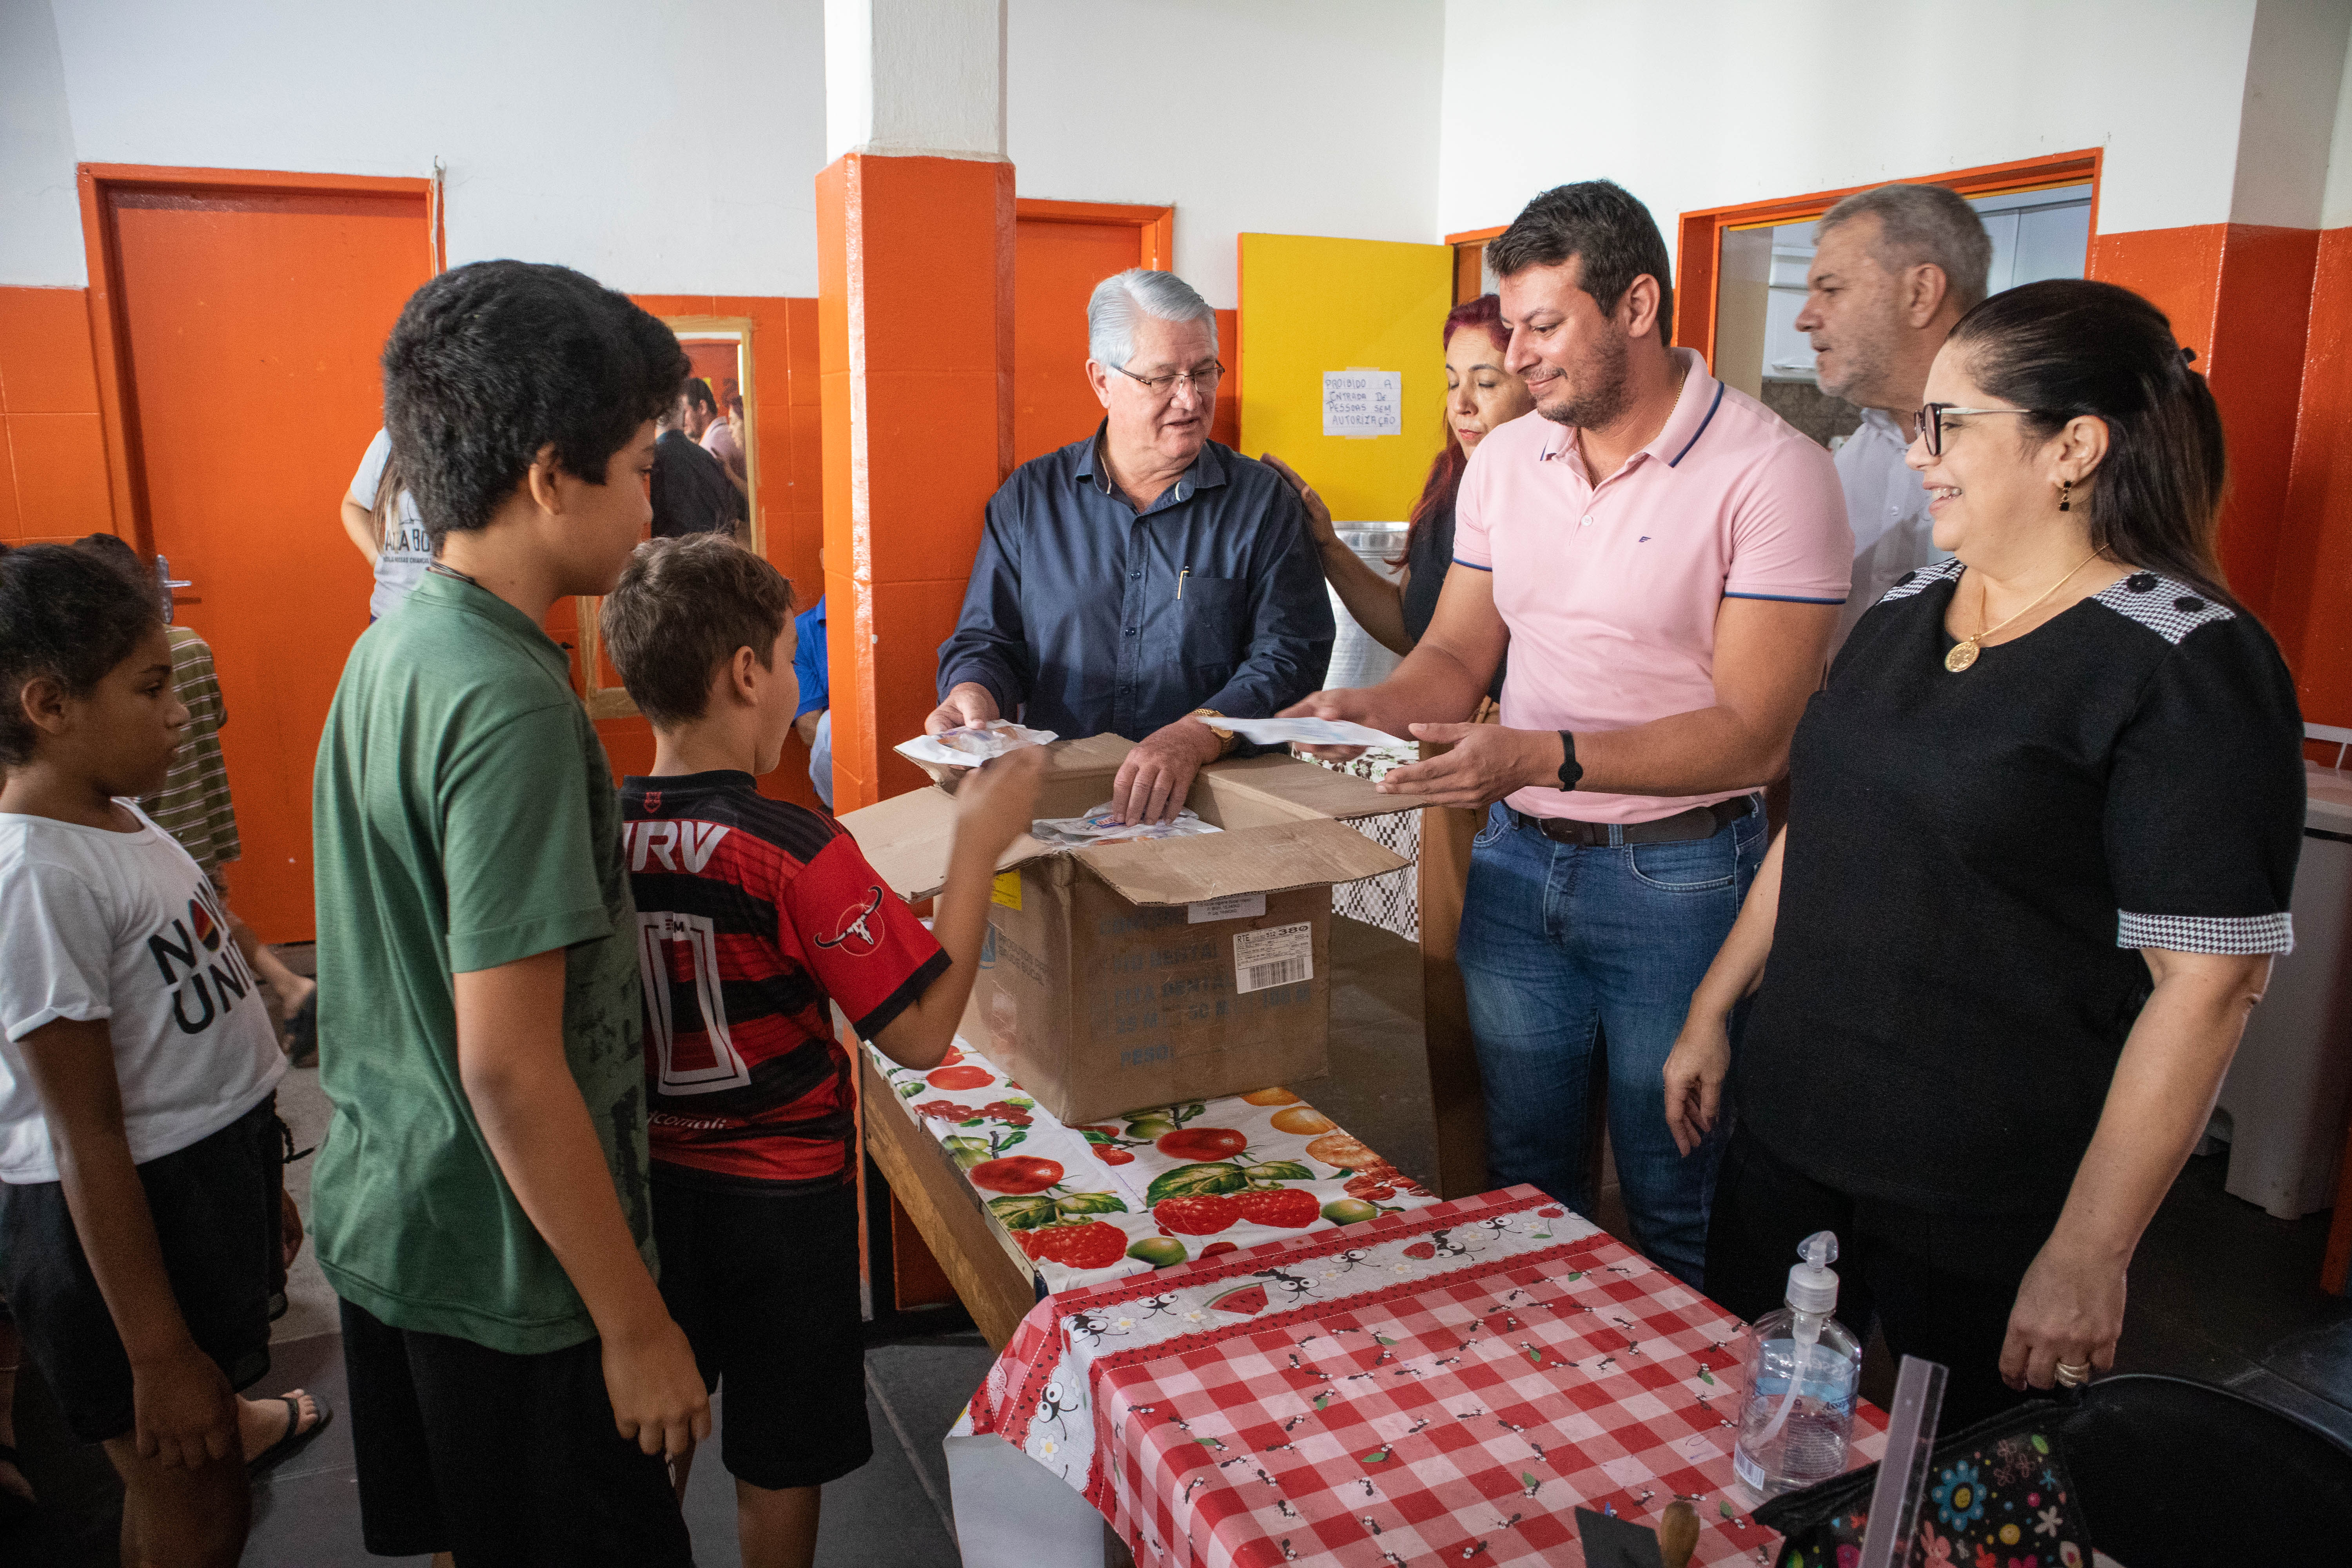 Gestores entregam kits para crianças do projeto Criança Feliz. Foto: Thomas Volpato Moutropoulos / Prefeitura Municipal de Urupês